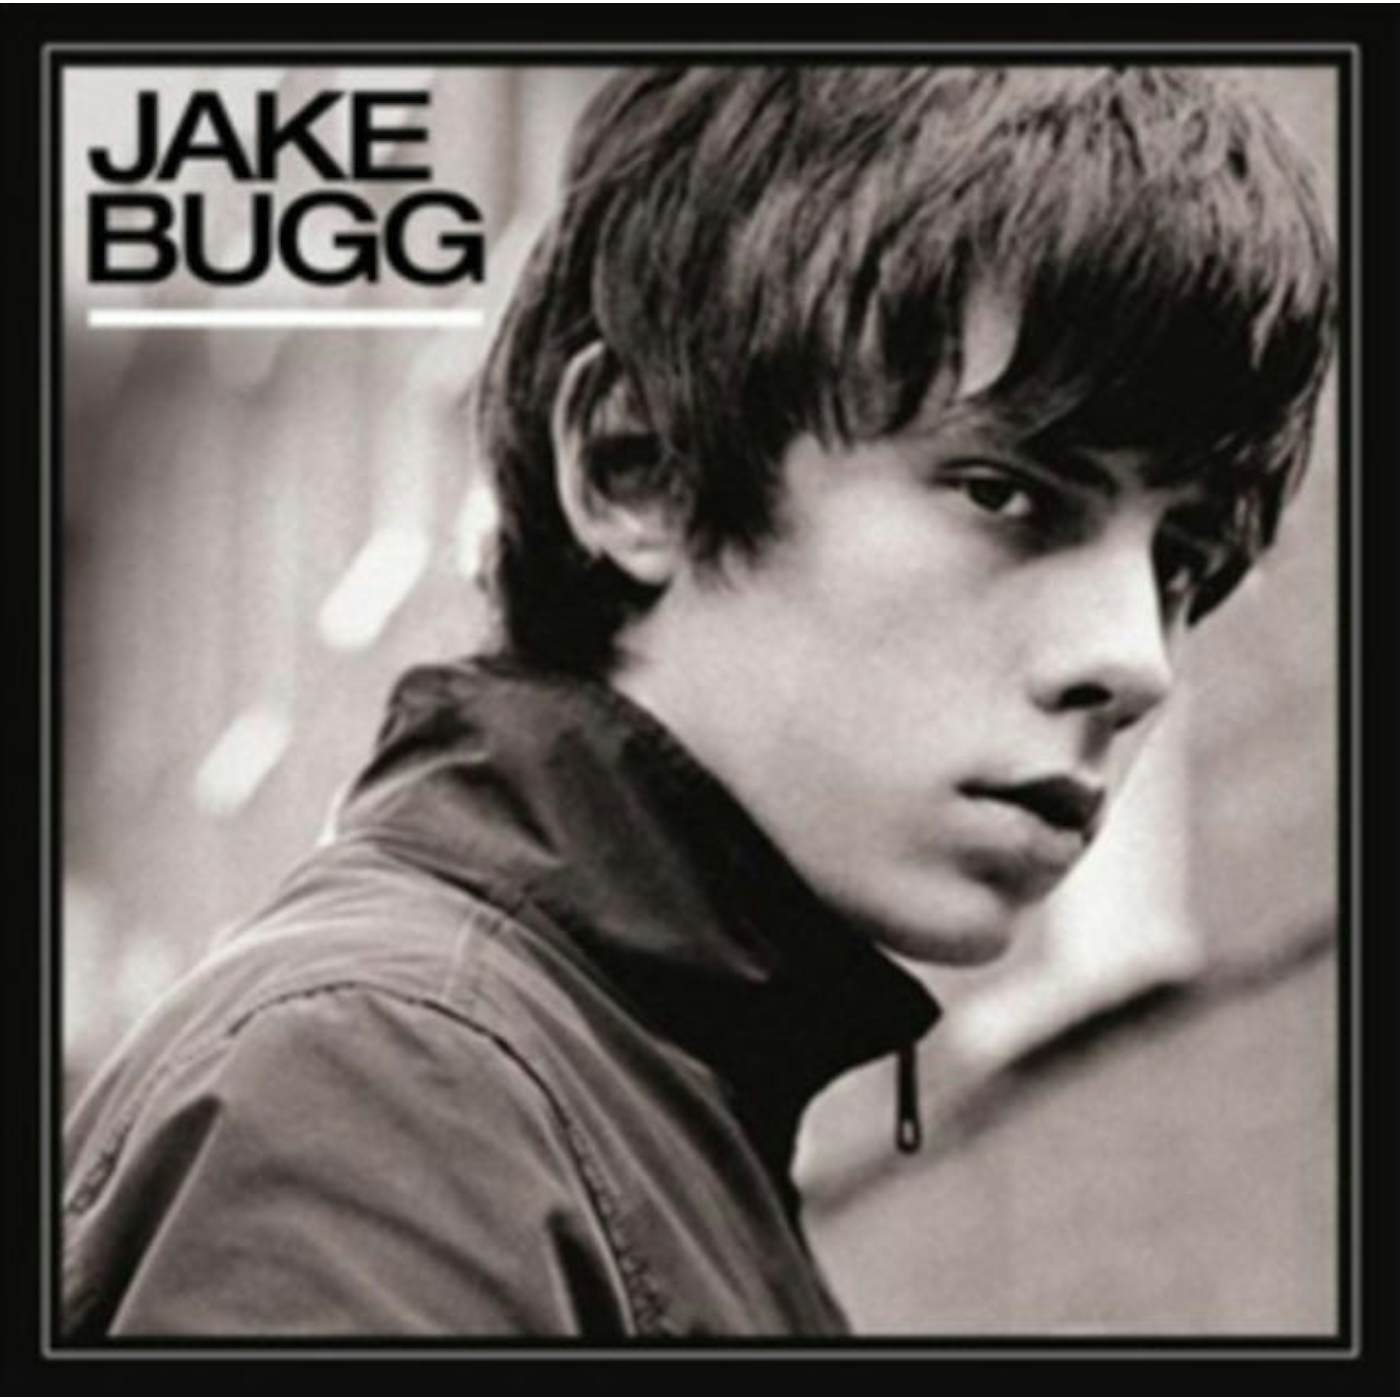 Jake Bugg LP Vinyl Record - Jake Bugg